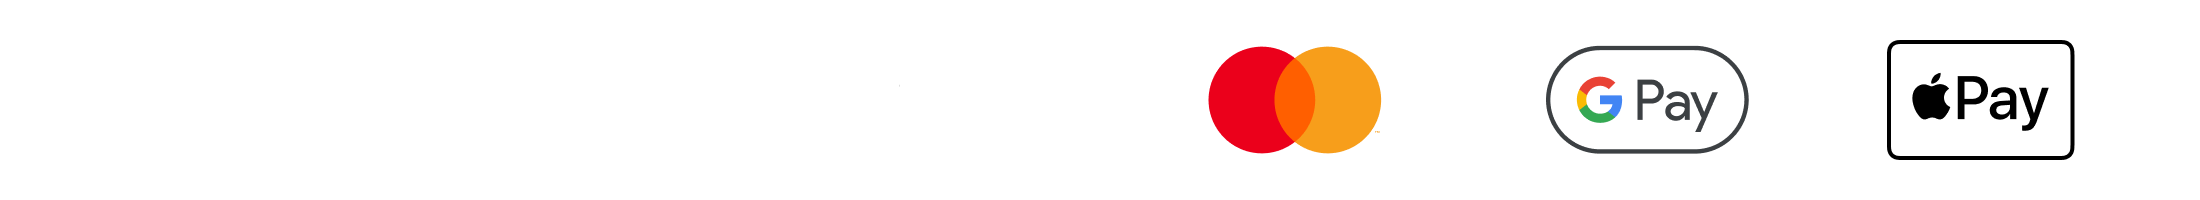 logo Comgate